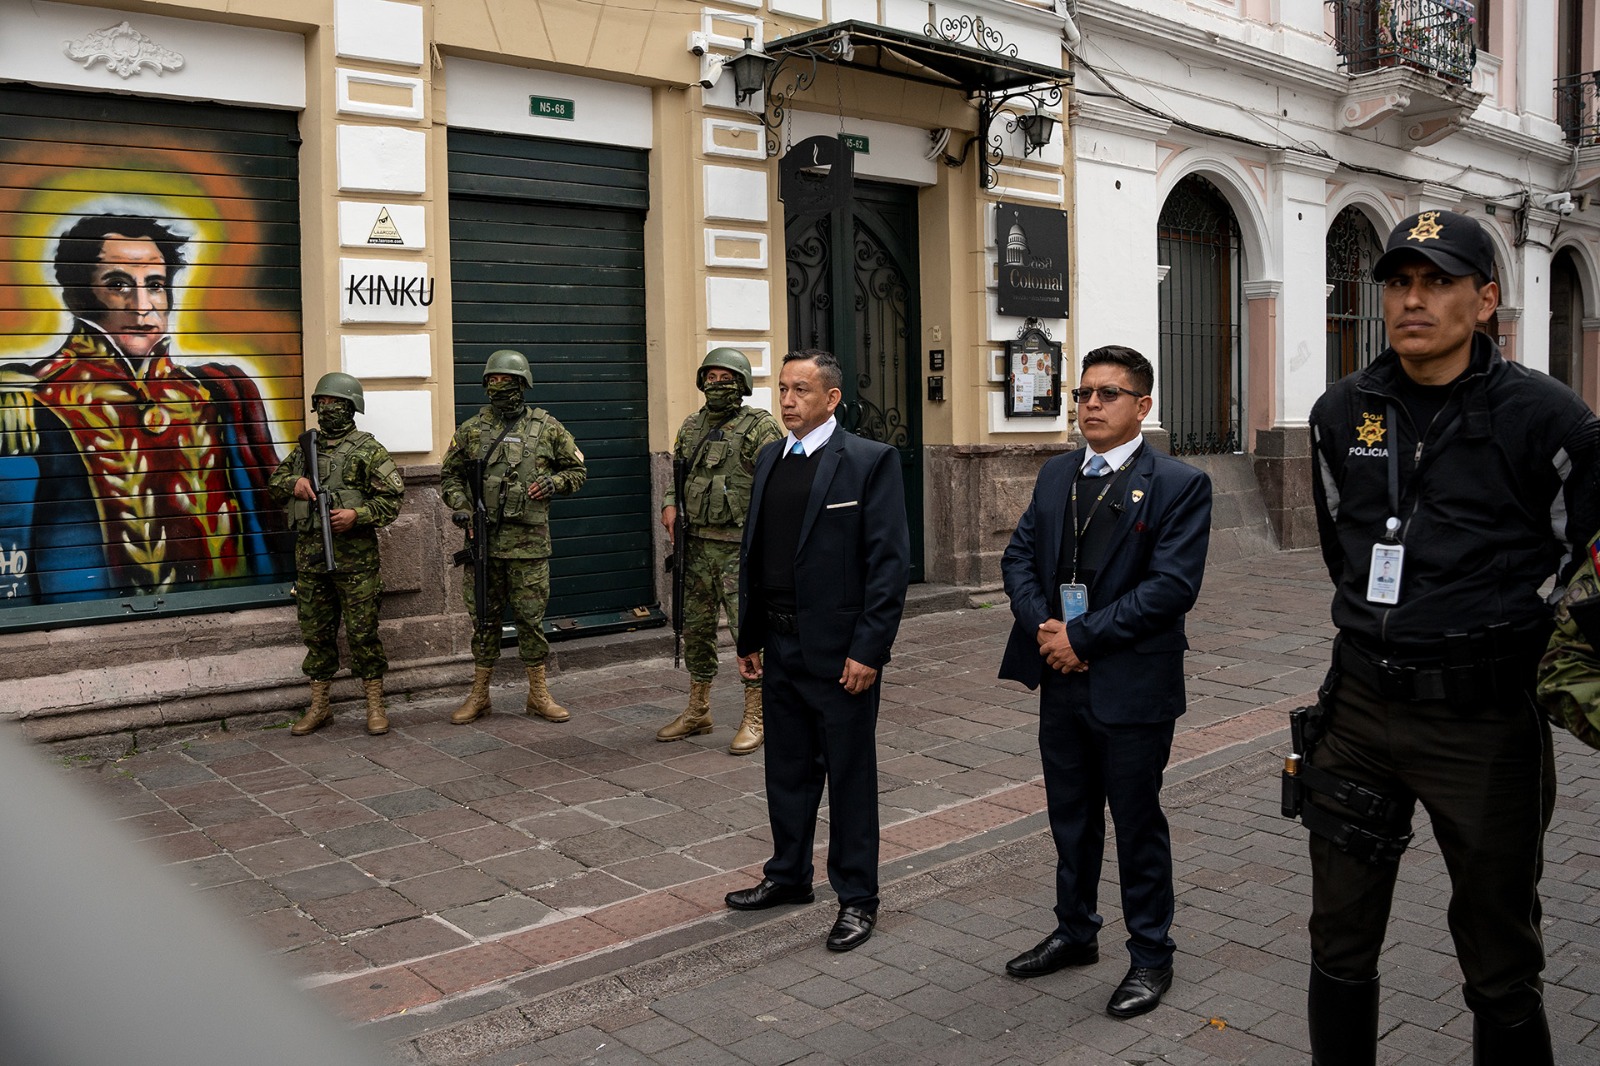 Fuerzas armadas y seguridad trabajan juntos para controlar la situación en Ecuador.